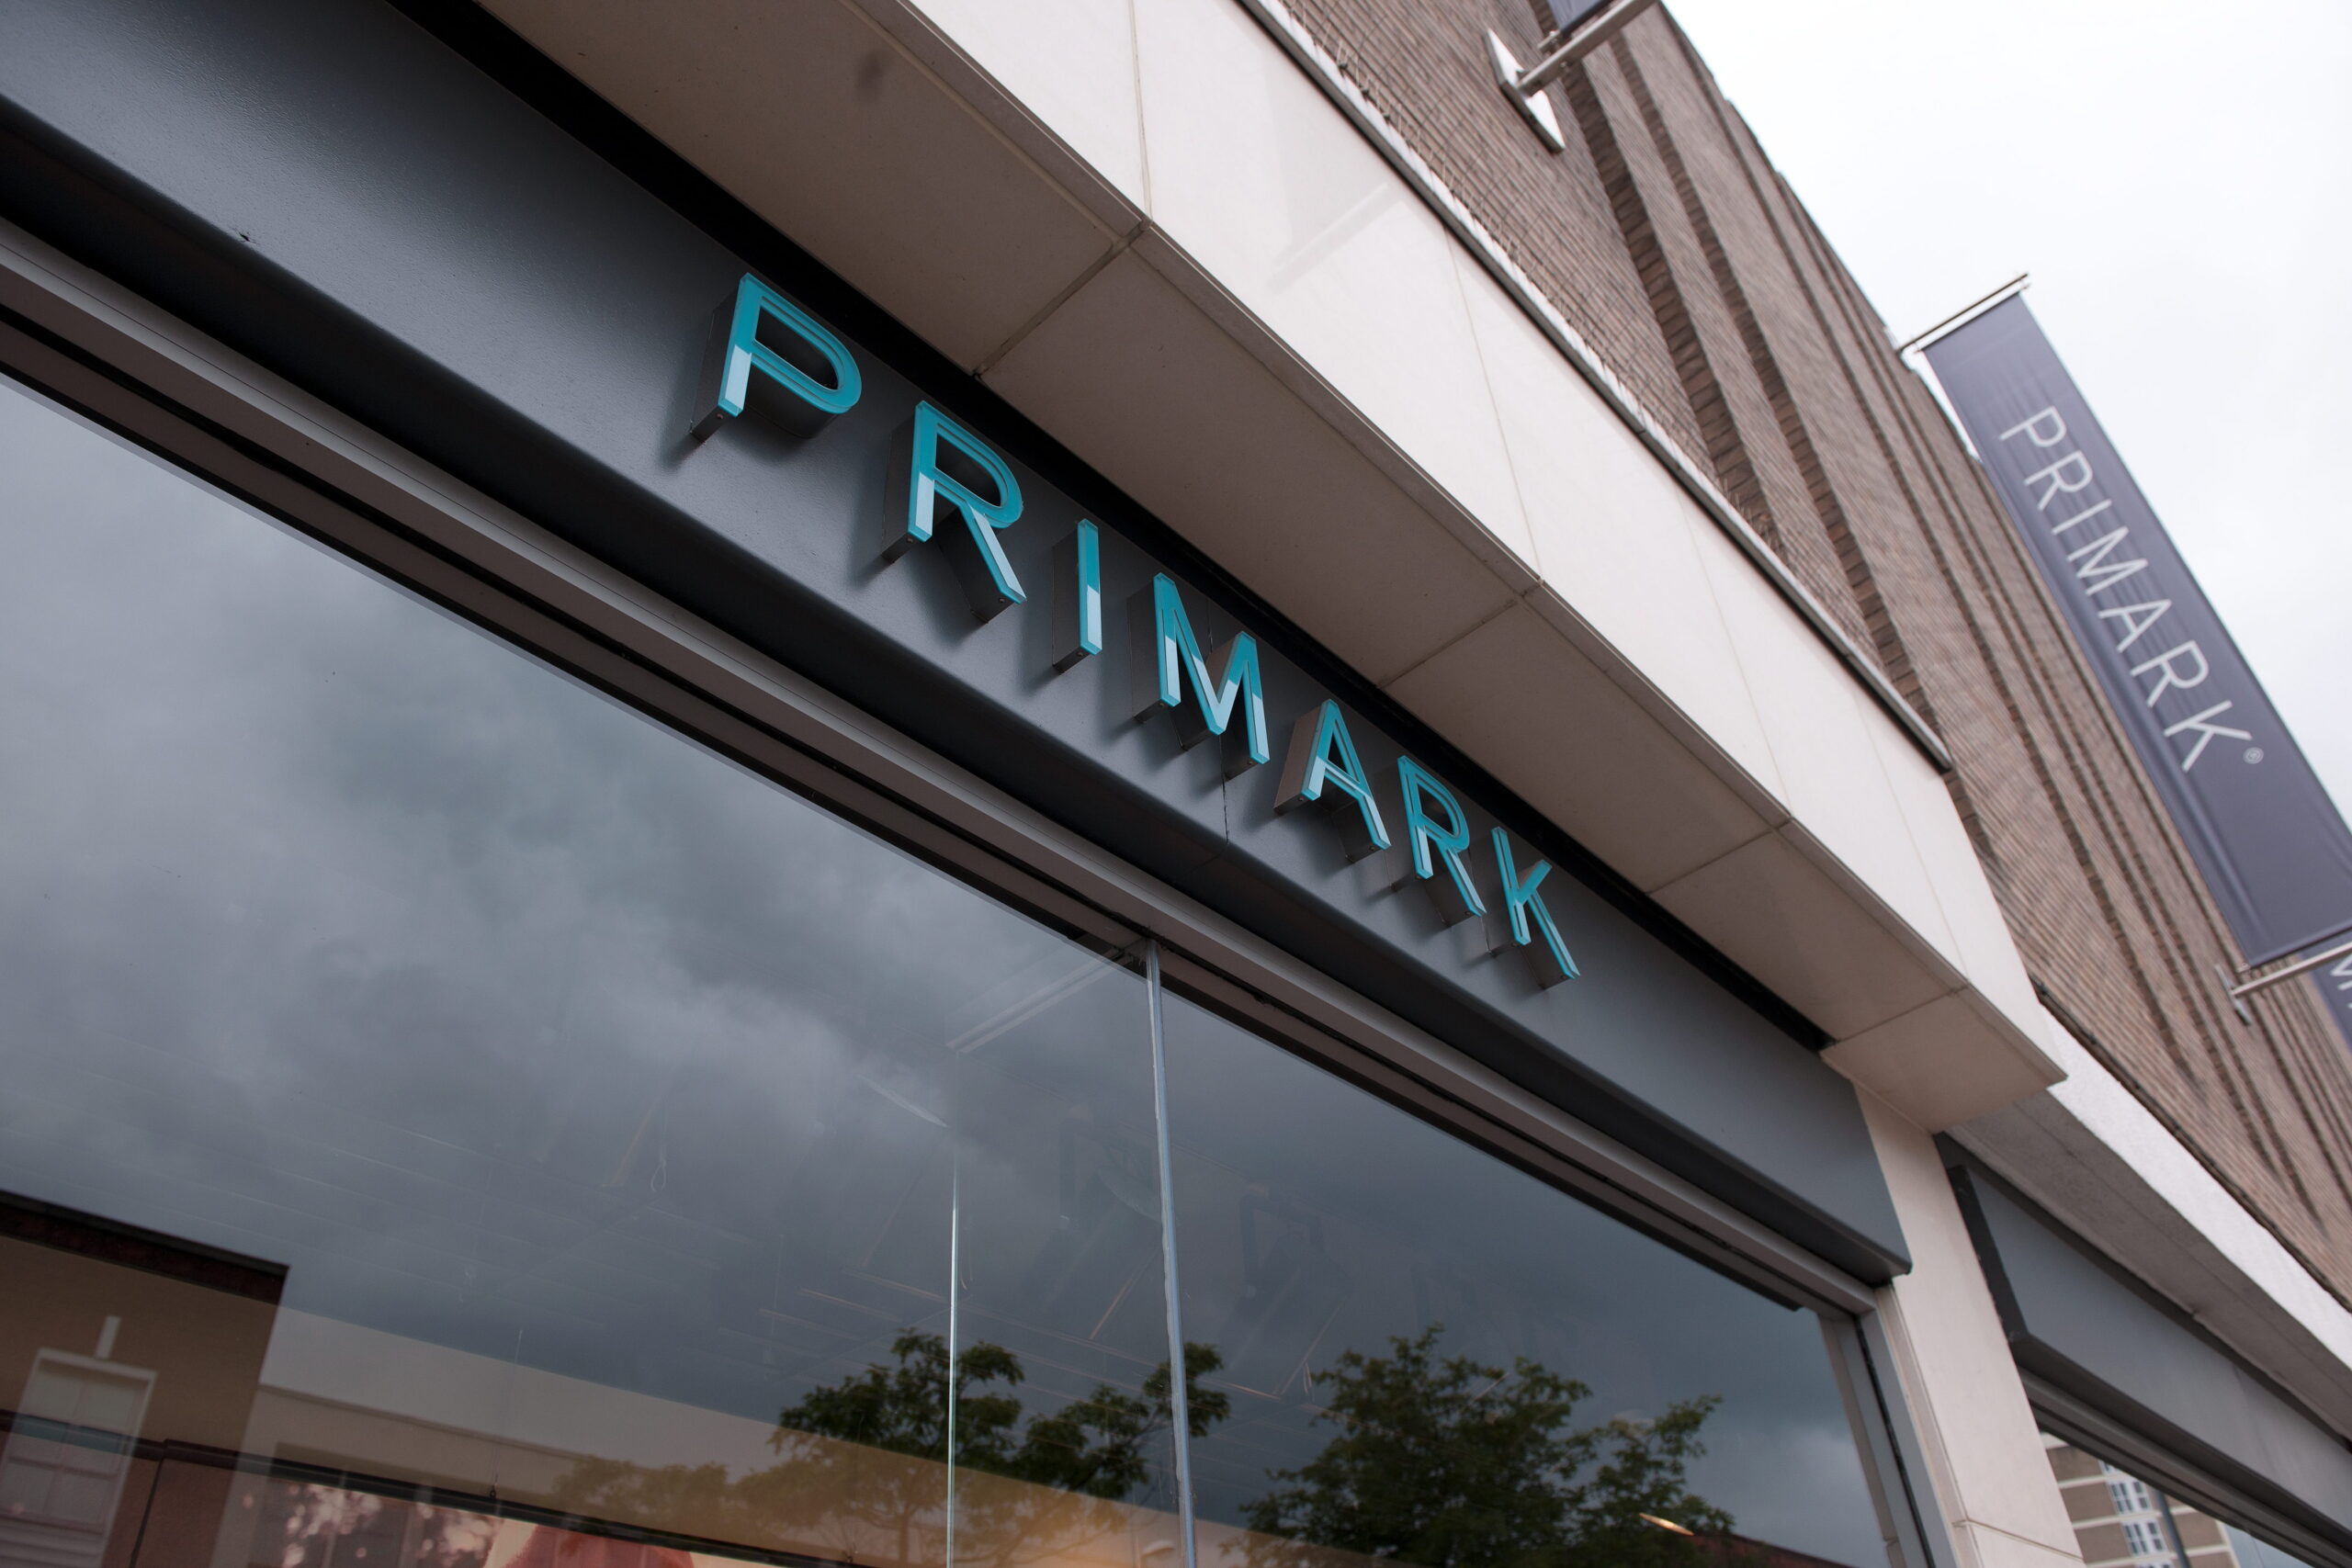 Új üzletlánc érkezik: Magyarországon is megnyitja első üzletét a Primark